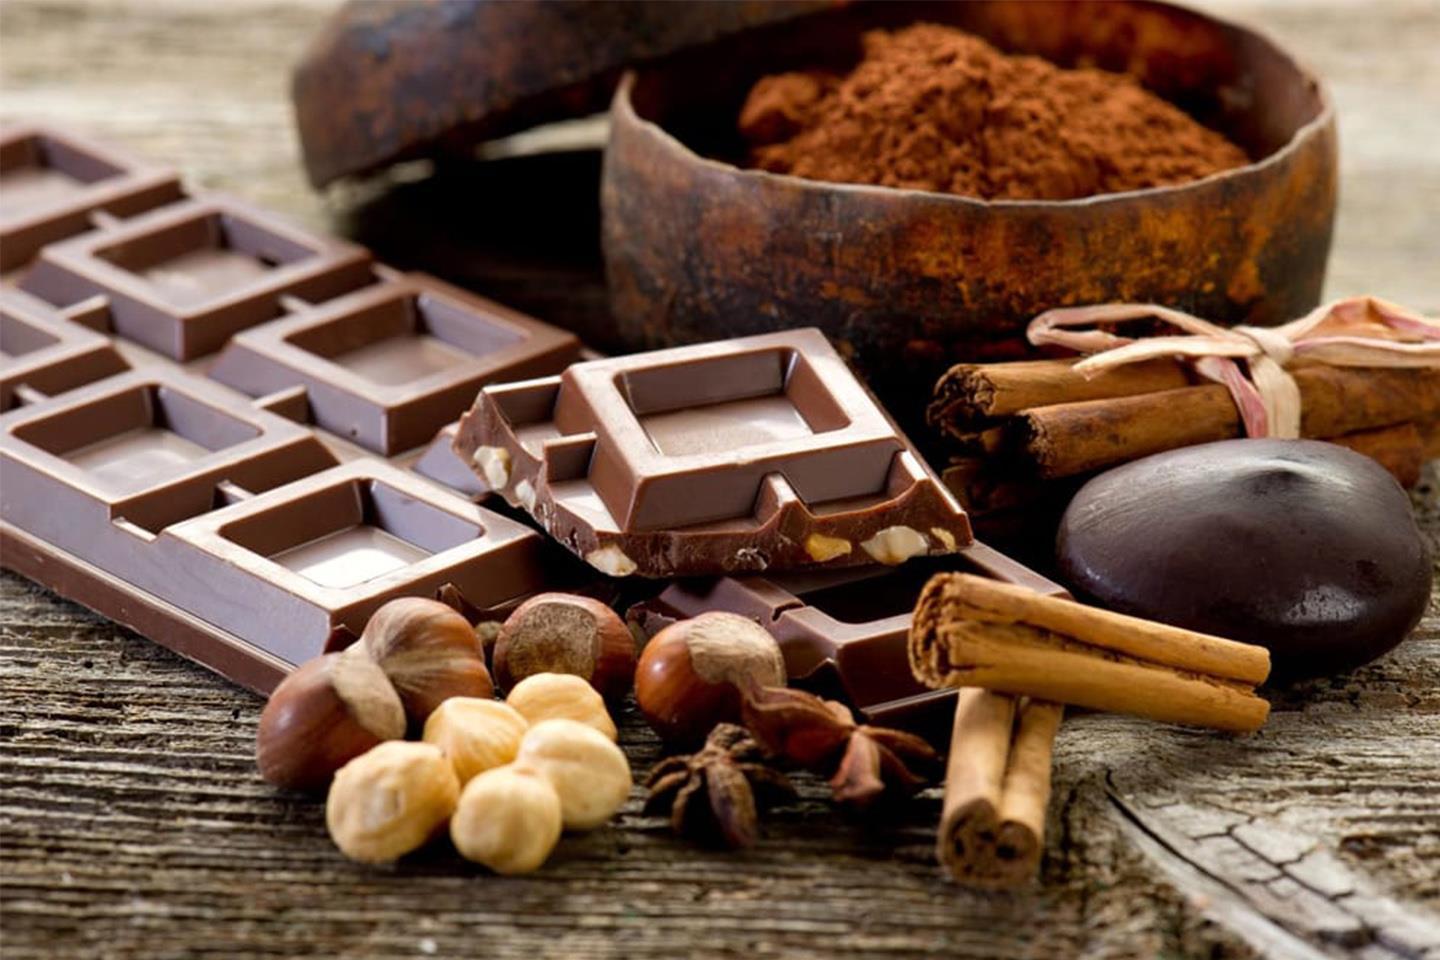 Chocomoments - Festa del cioccolato artigianale